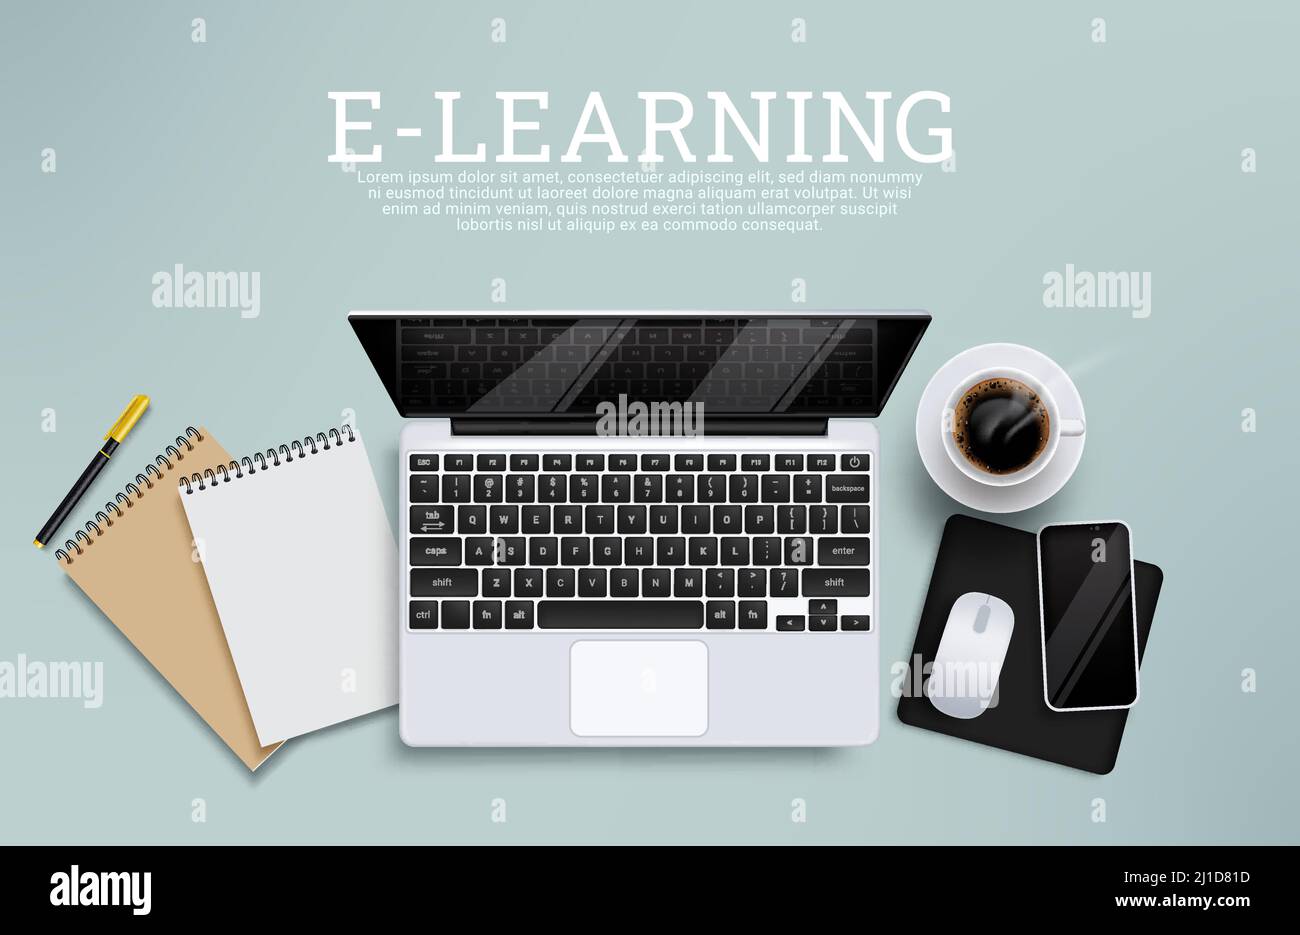 ELearning-Vektordesign für den Bildungsbereich. E-Learning-Text mit digitalen Geräteelementen für Laptops und Telefone für Fernschulungskurse. Stock Vektor